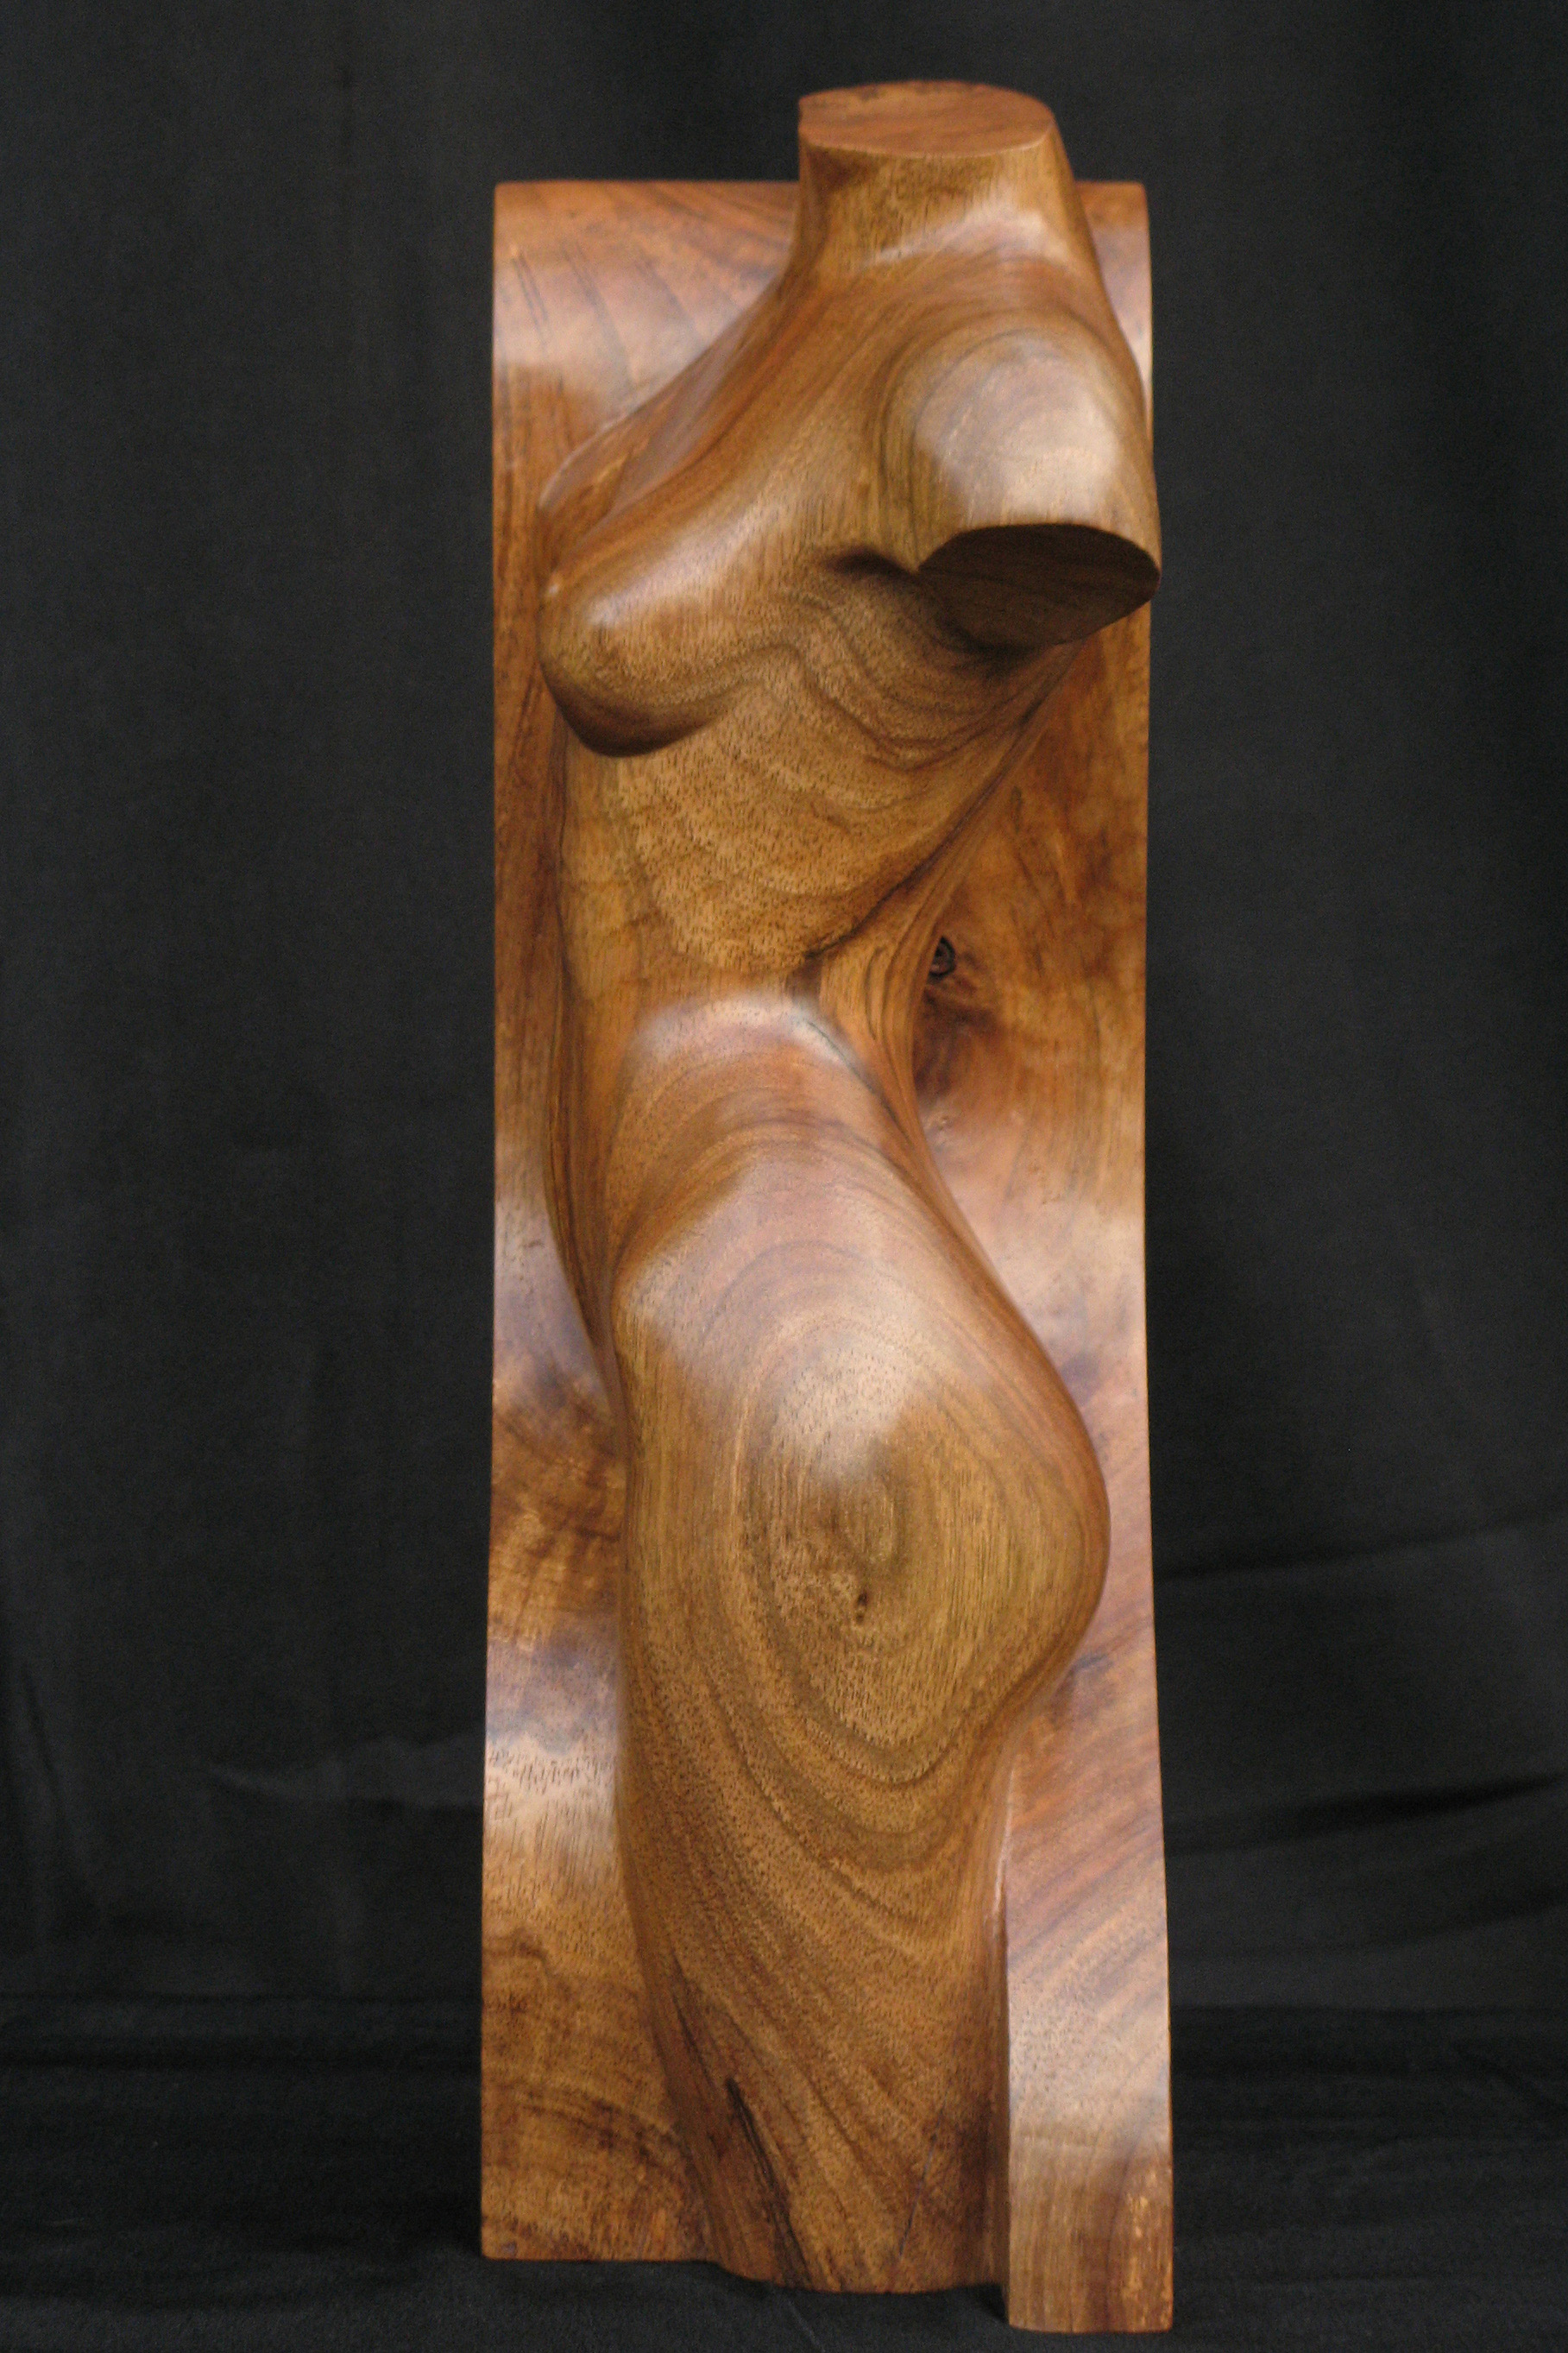 Wood Nymph #1, beeld van hout, vrouwelijke tors, linkerzijde